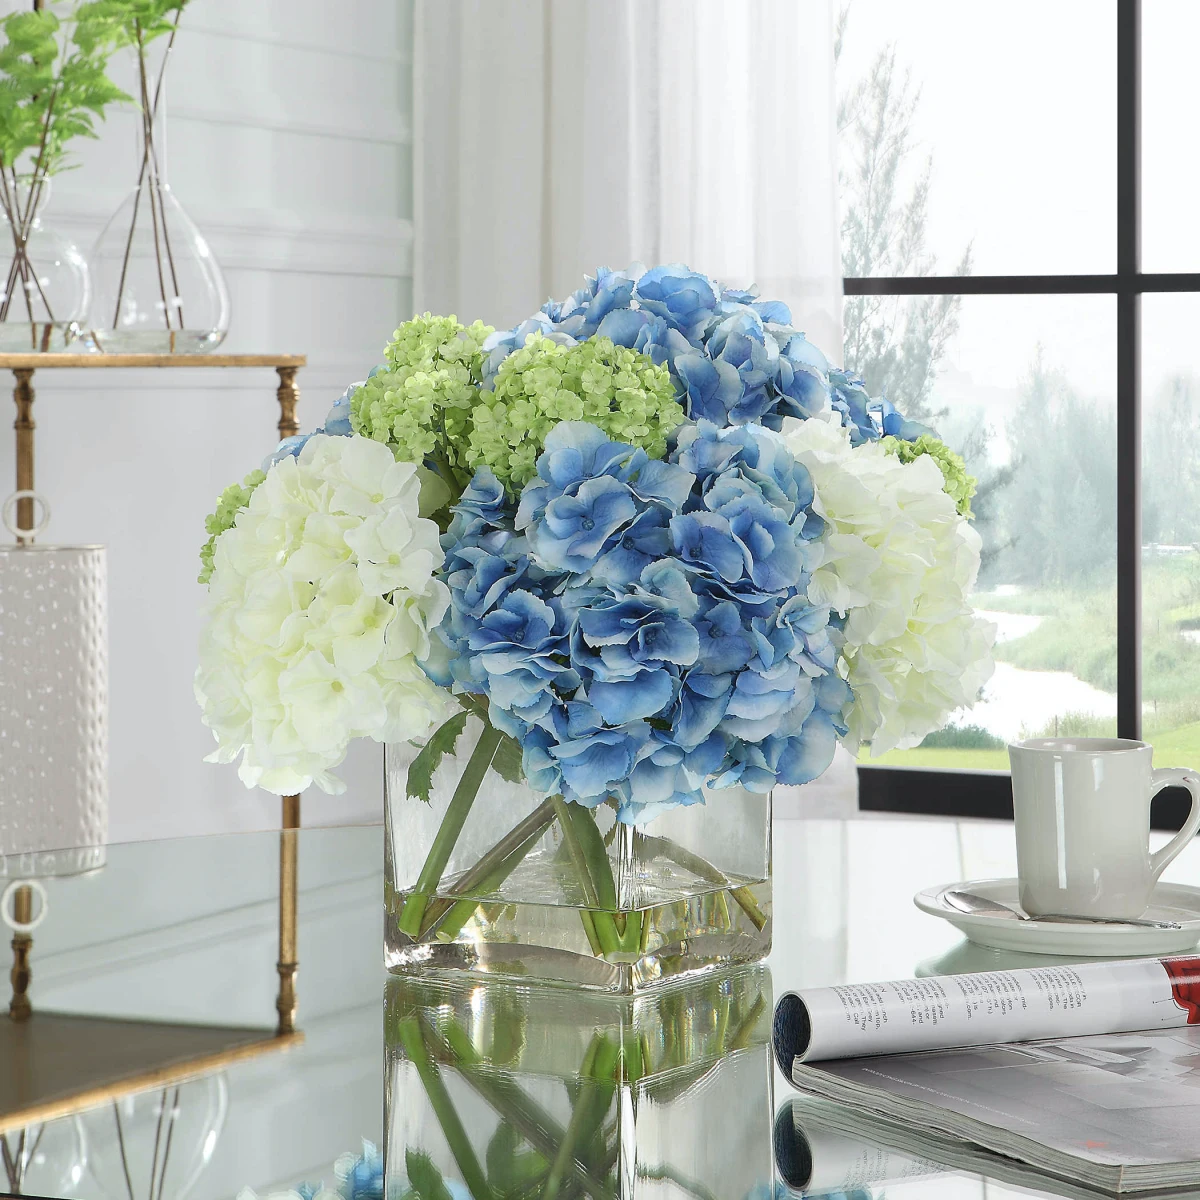 couleurs froides pour faire un joli bouquet hortensia blue